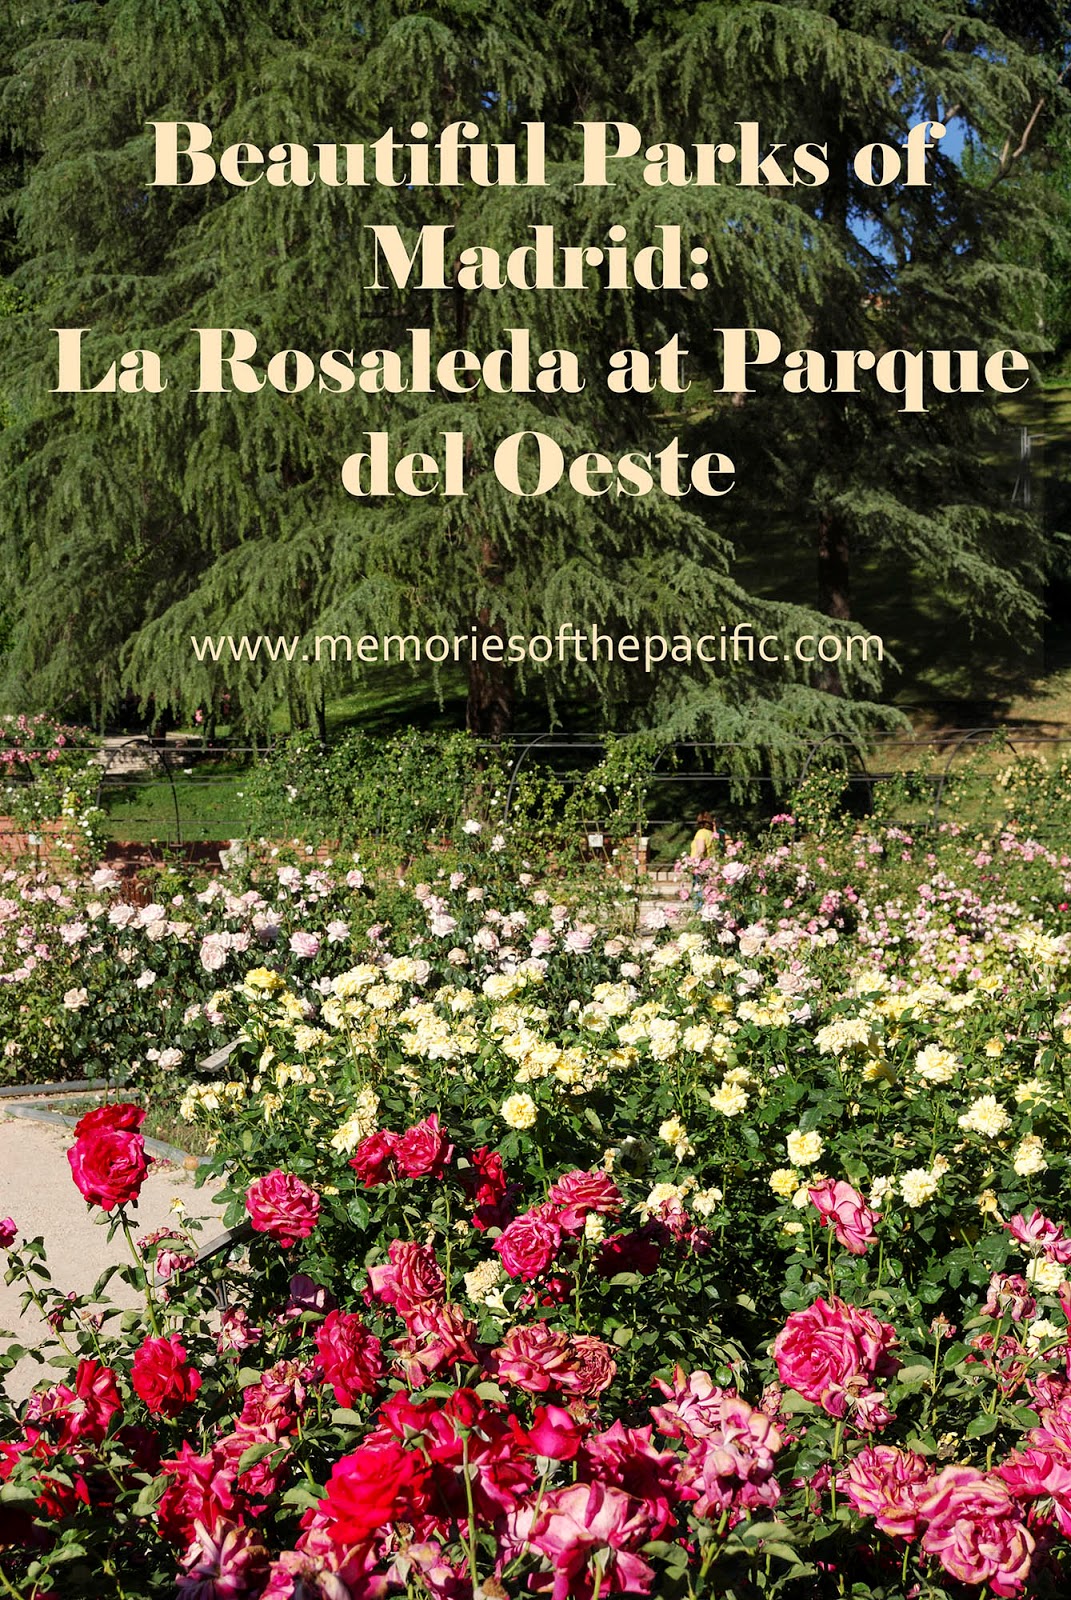 rosaleda rose garden show madrid parque oeste west park beautiful moncloa spain flower